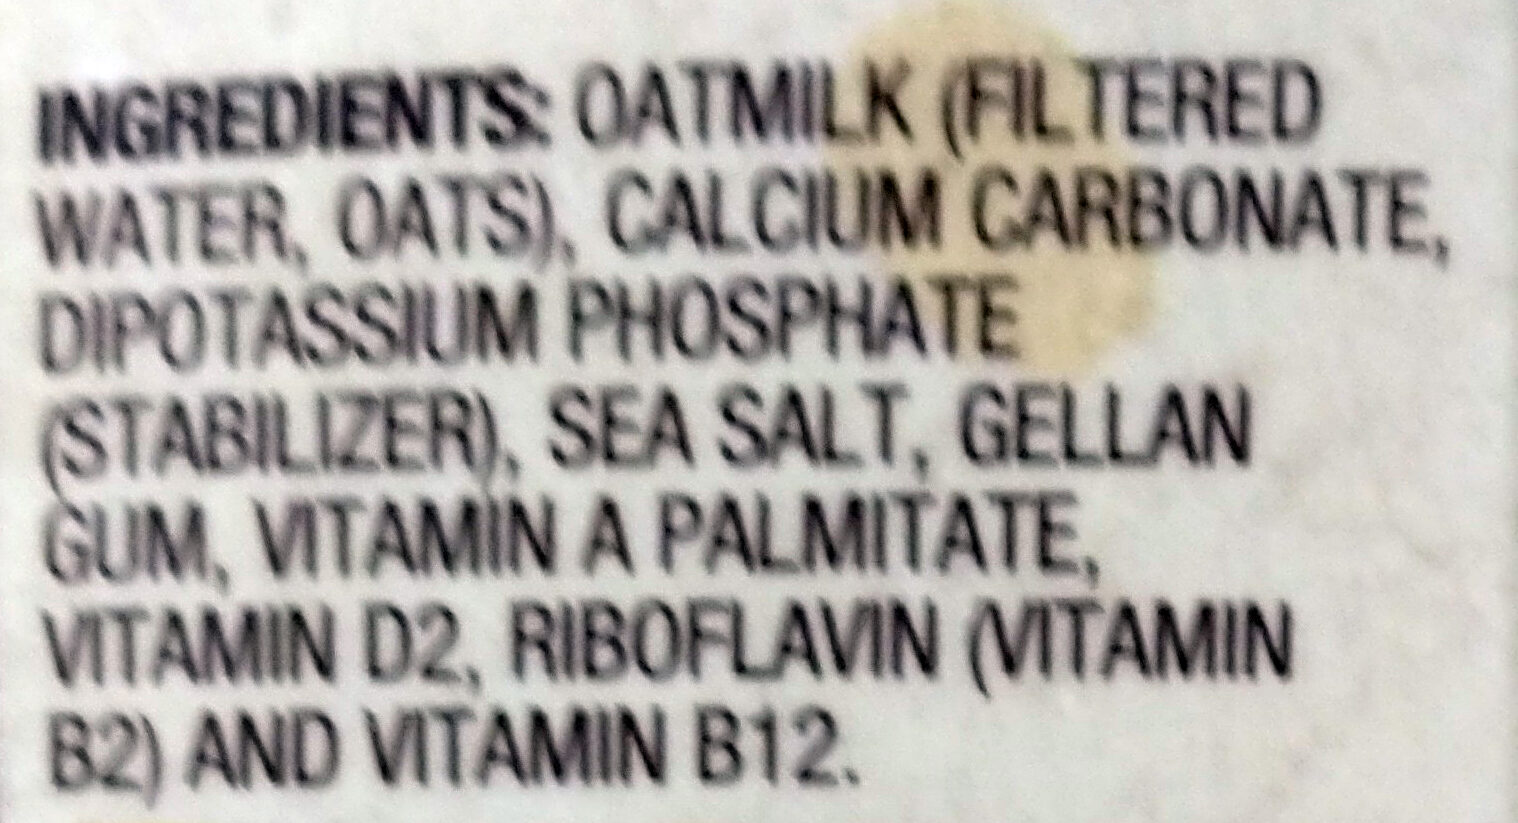 Original Oatmilk - Ingredients